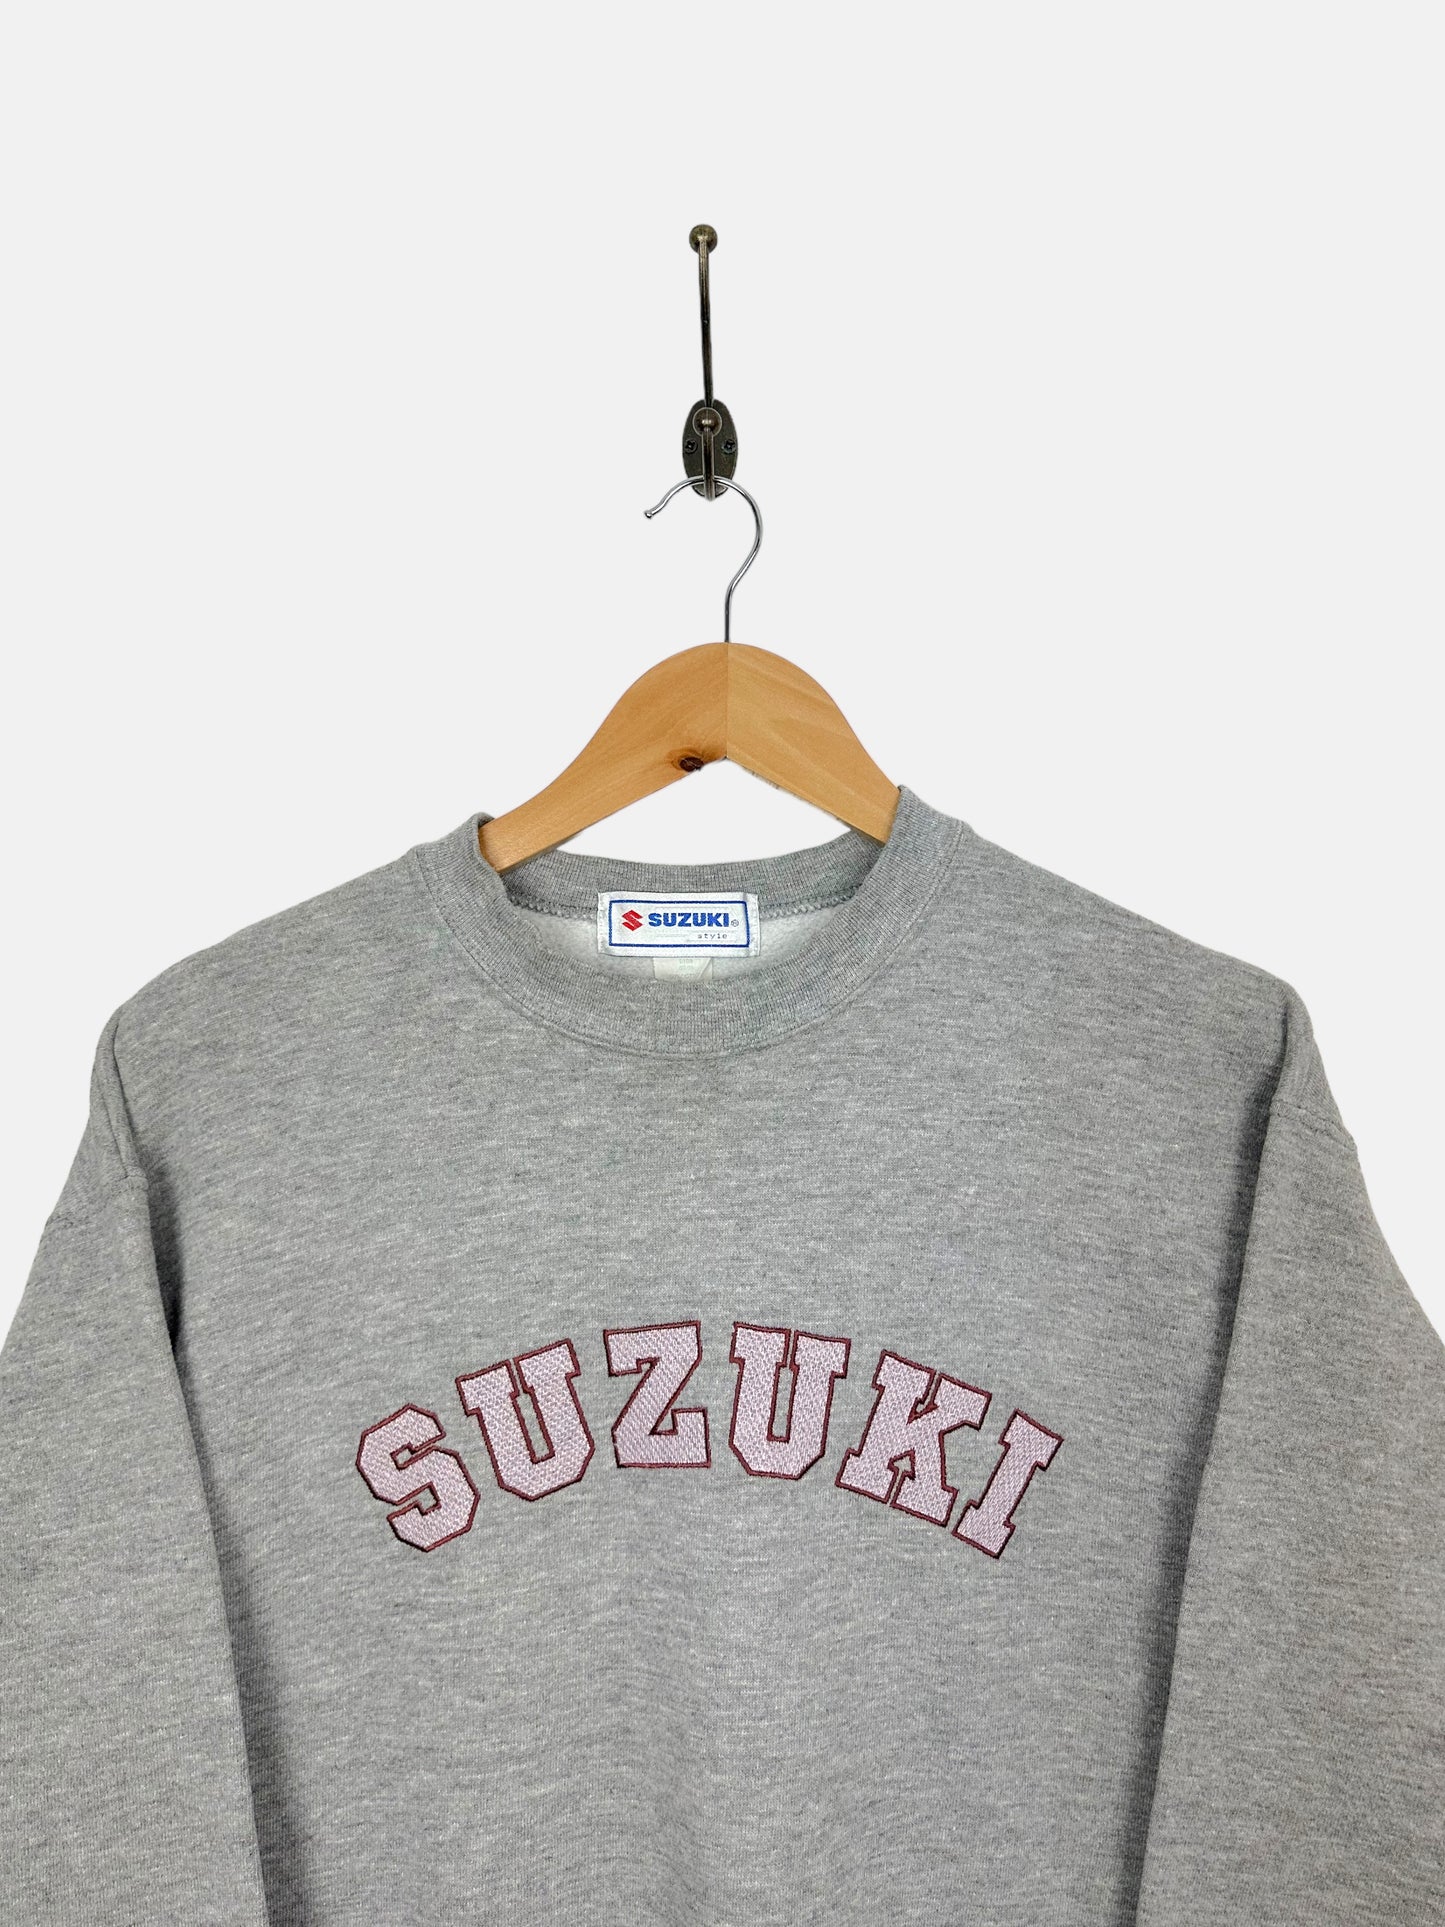 90's Suzuki Embroidered Vintage Sweatshirt 8-10